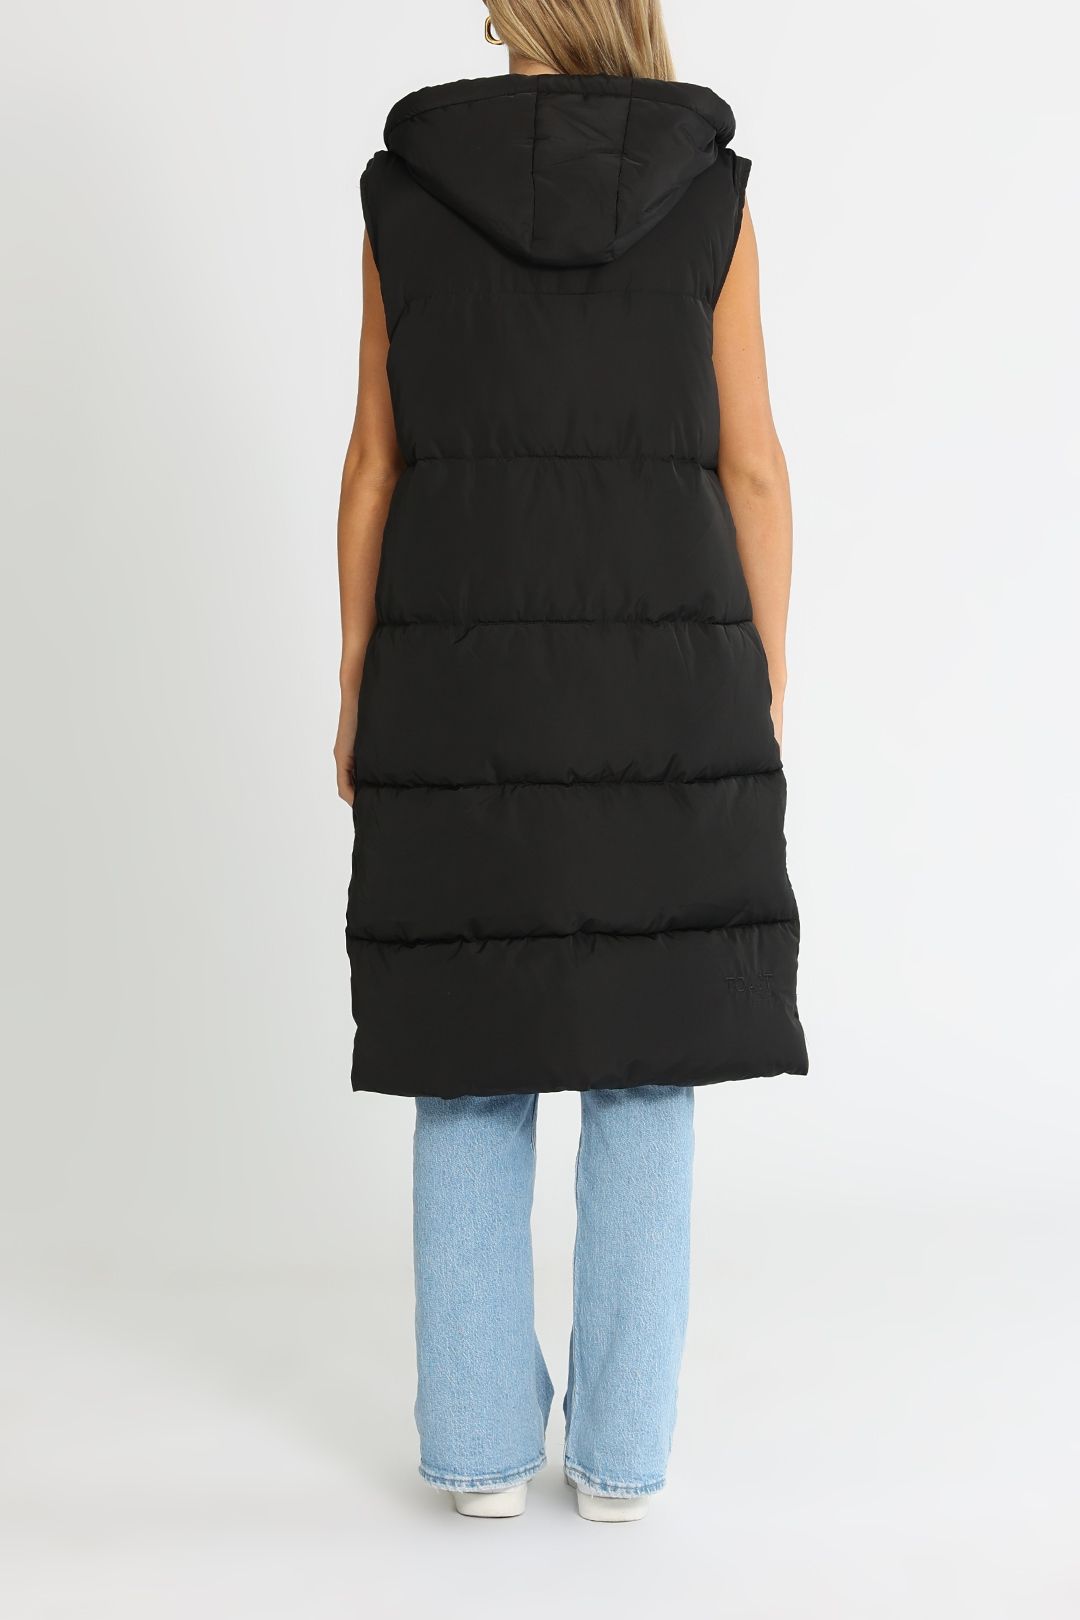 Toast Society Lara Longline Vest Black Hooded